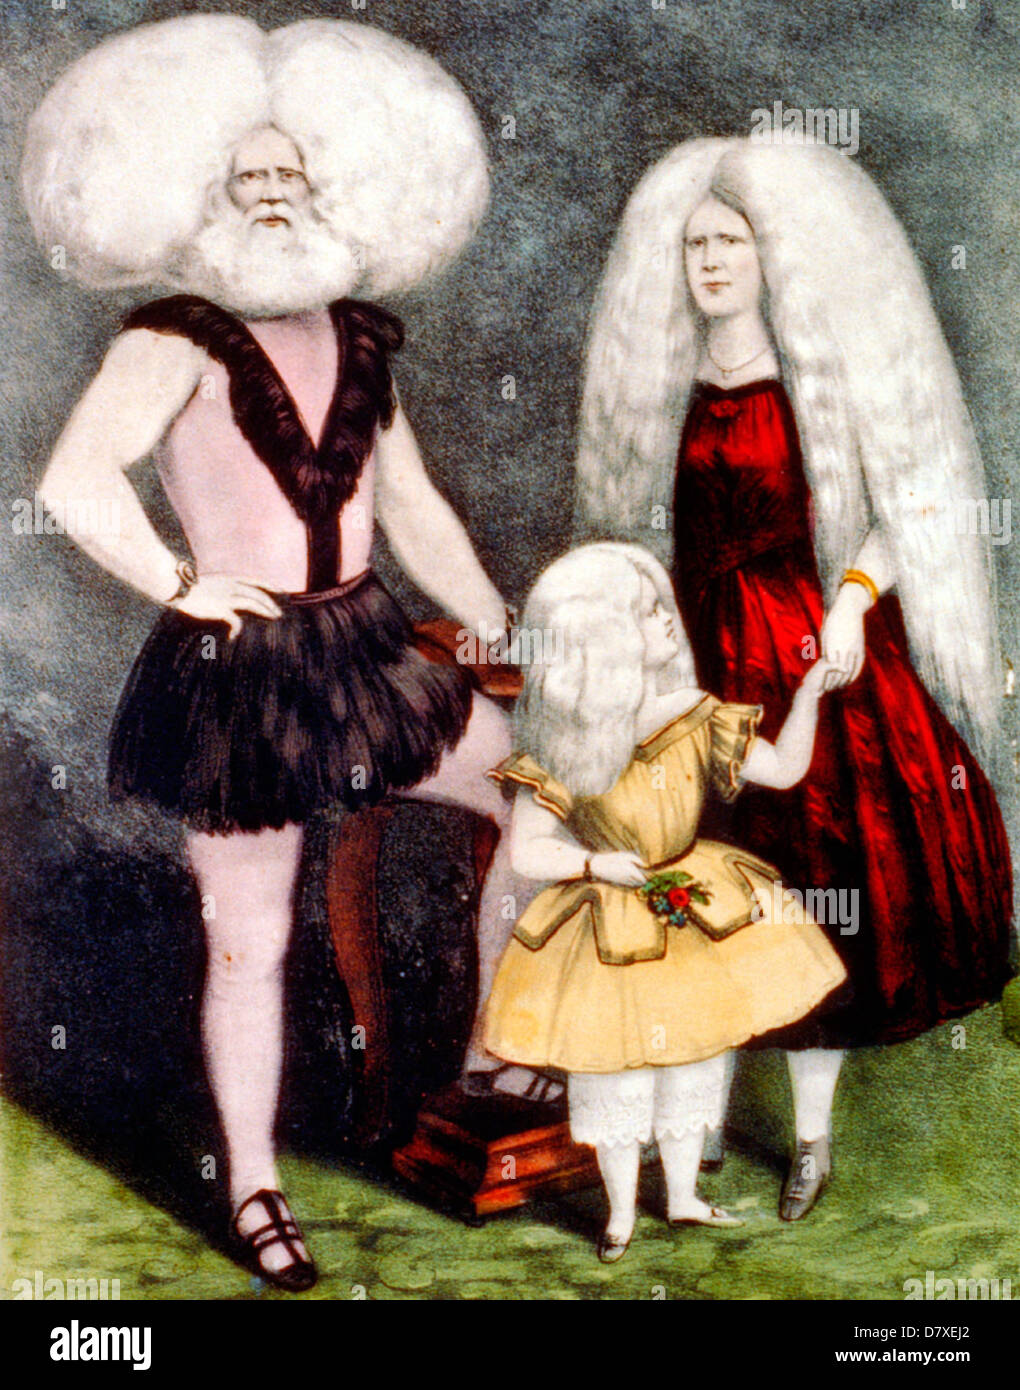 The wonderful albino family / la maravilosa familia albi - Albino Family, circa 1860 Stock Photo